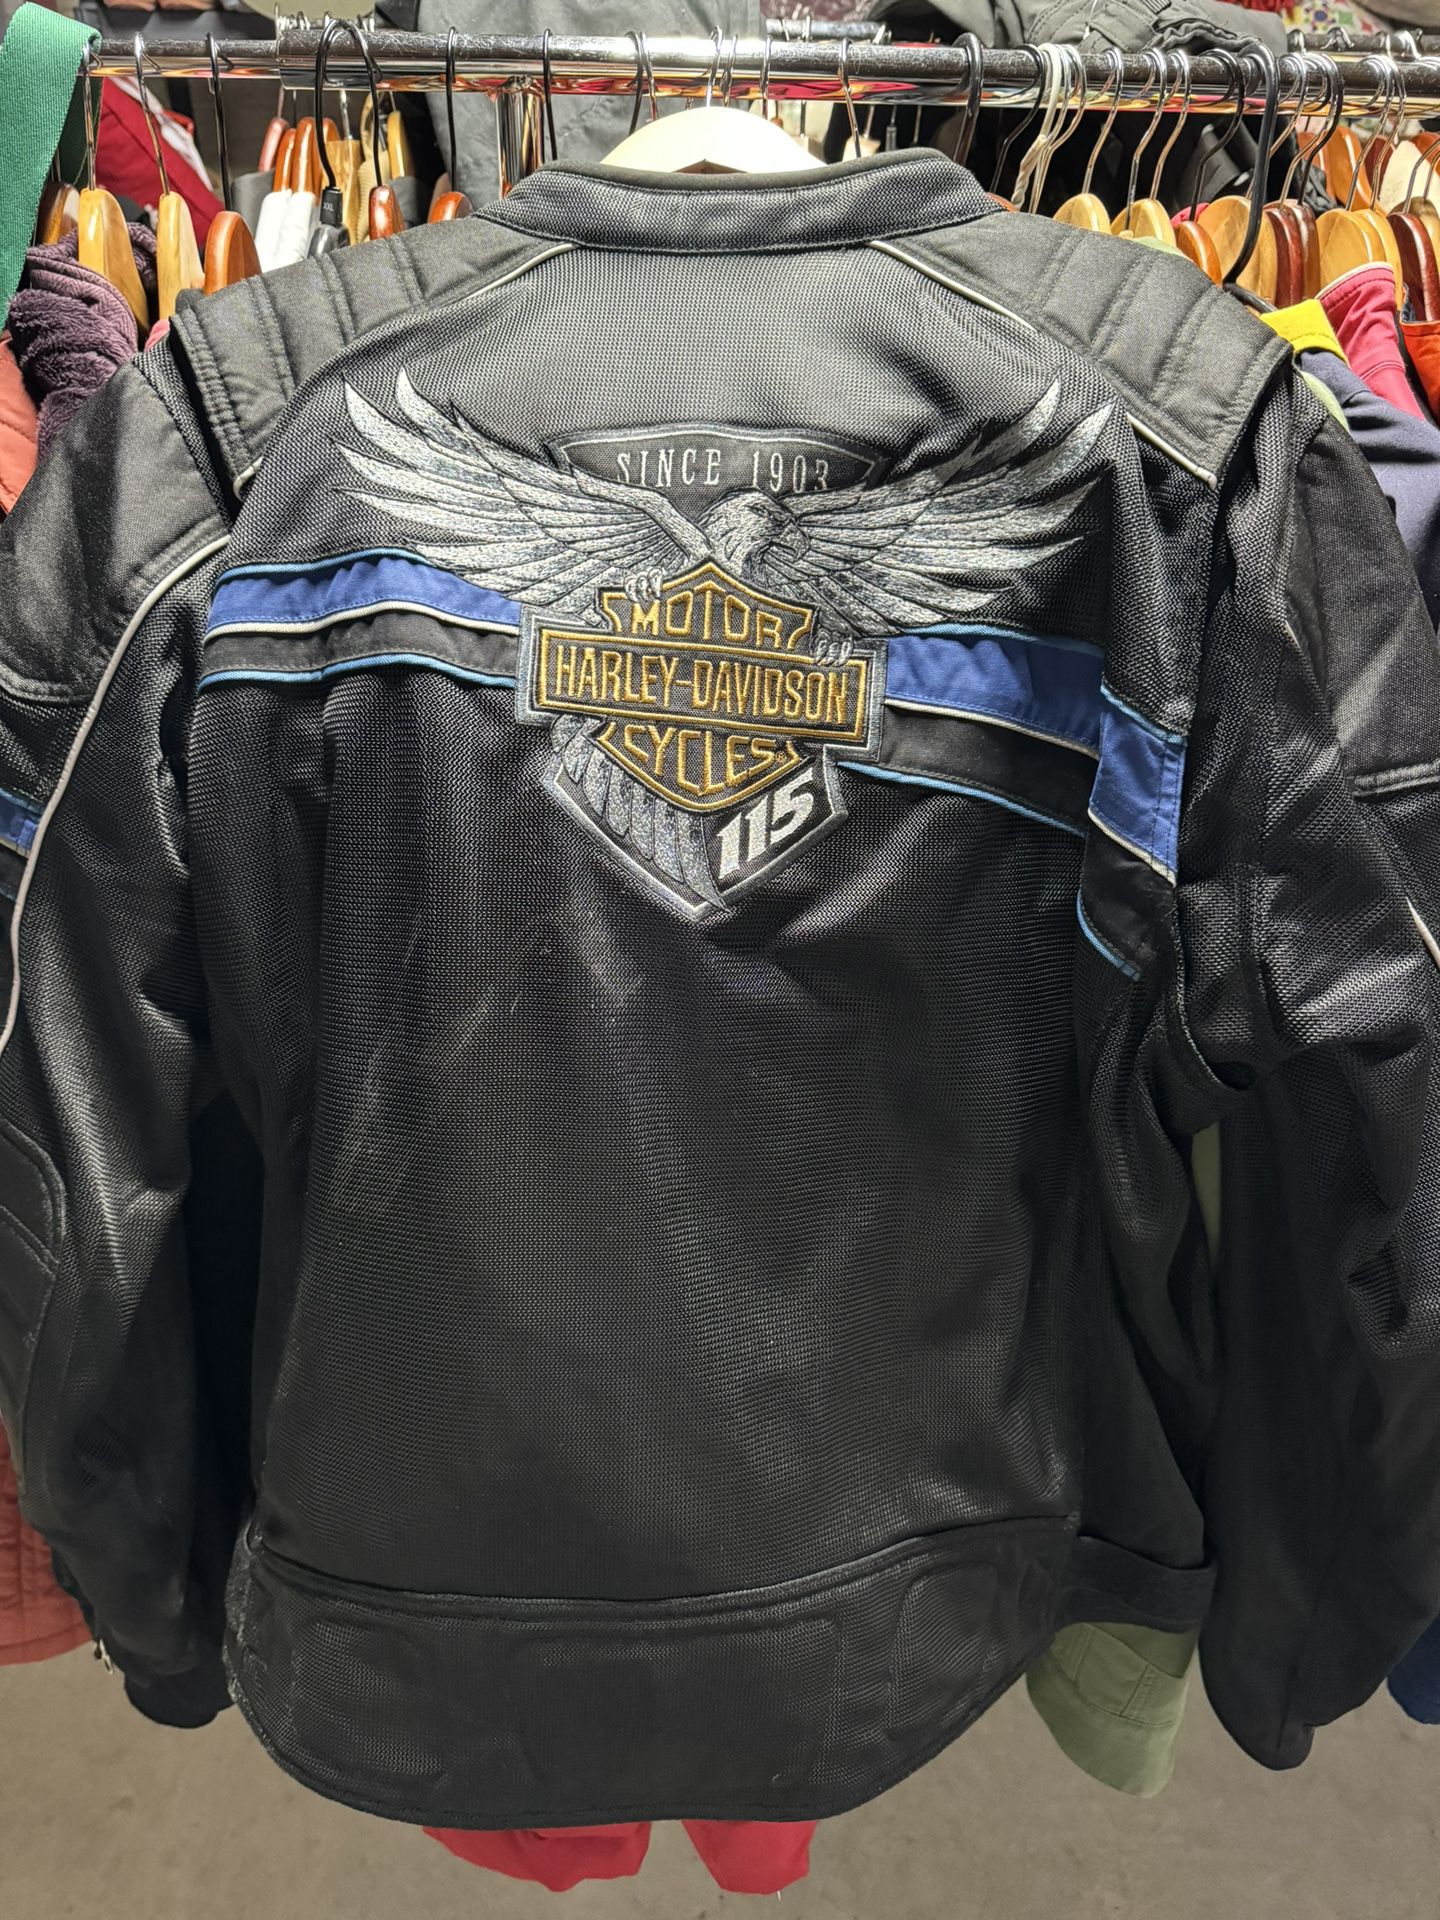 Harley Jacket, Size 2xl